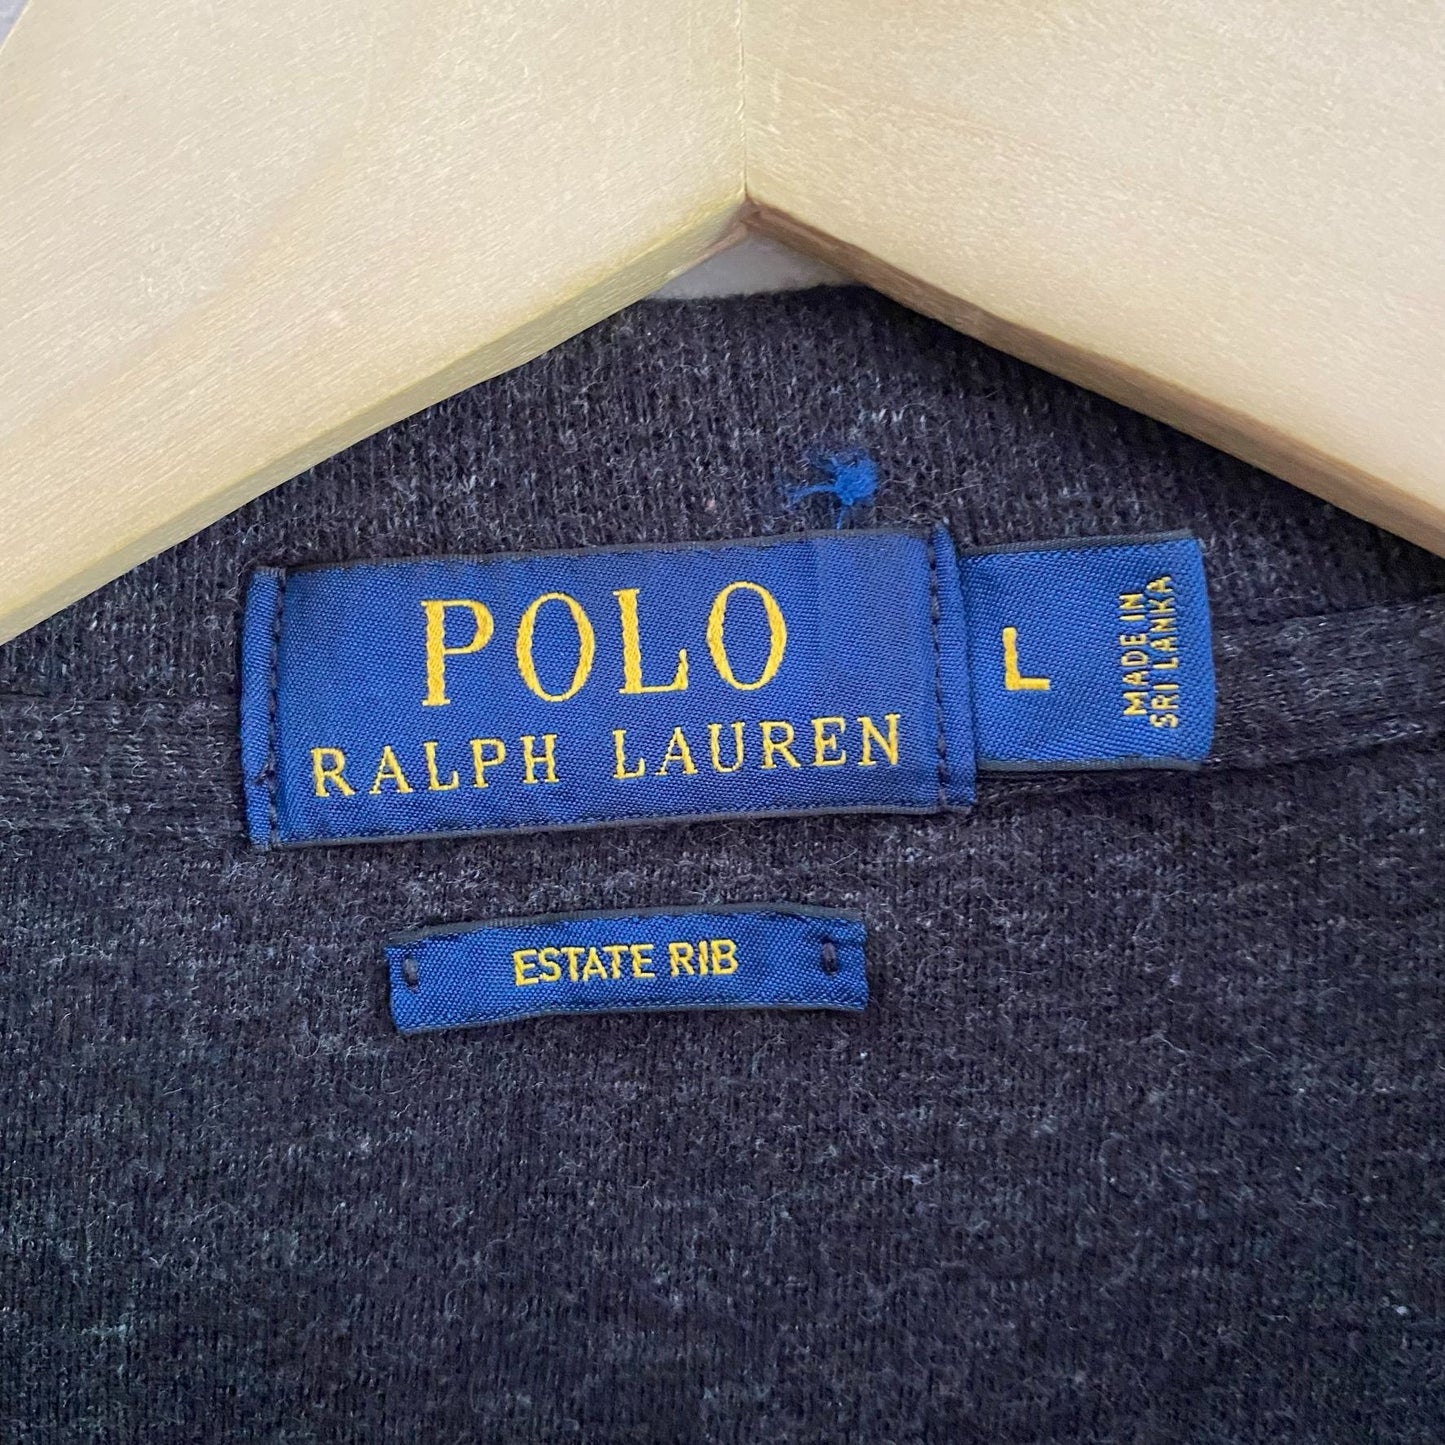 Polo Ralph Lauren Estate Rib Pullover